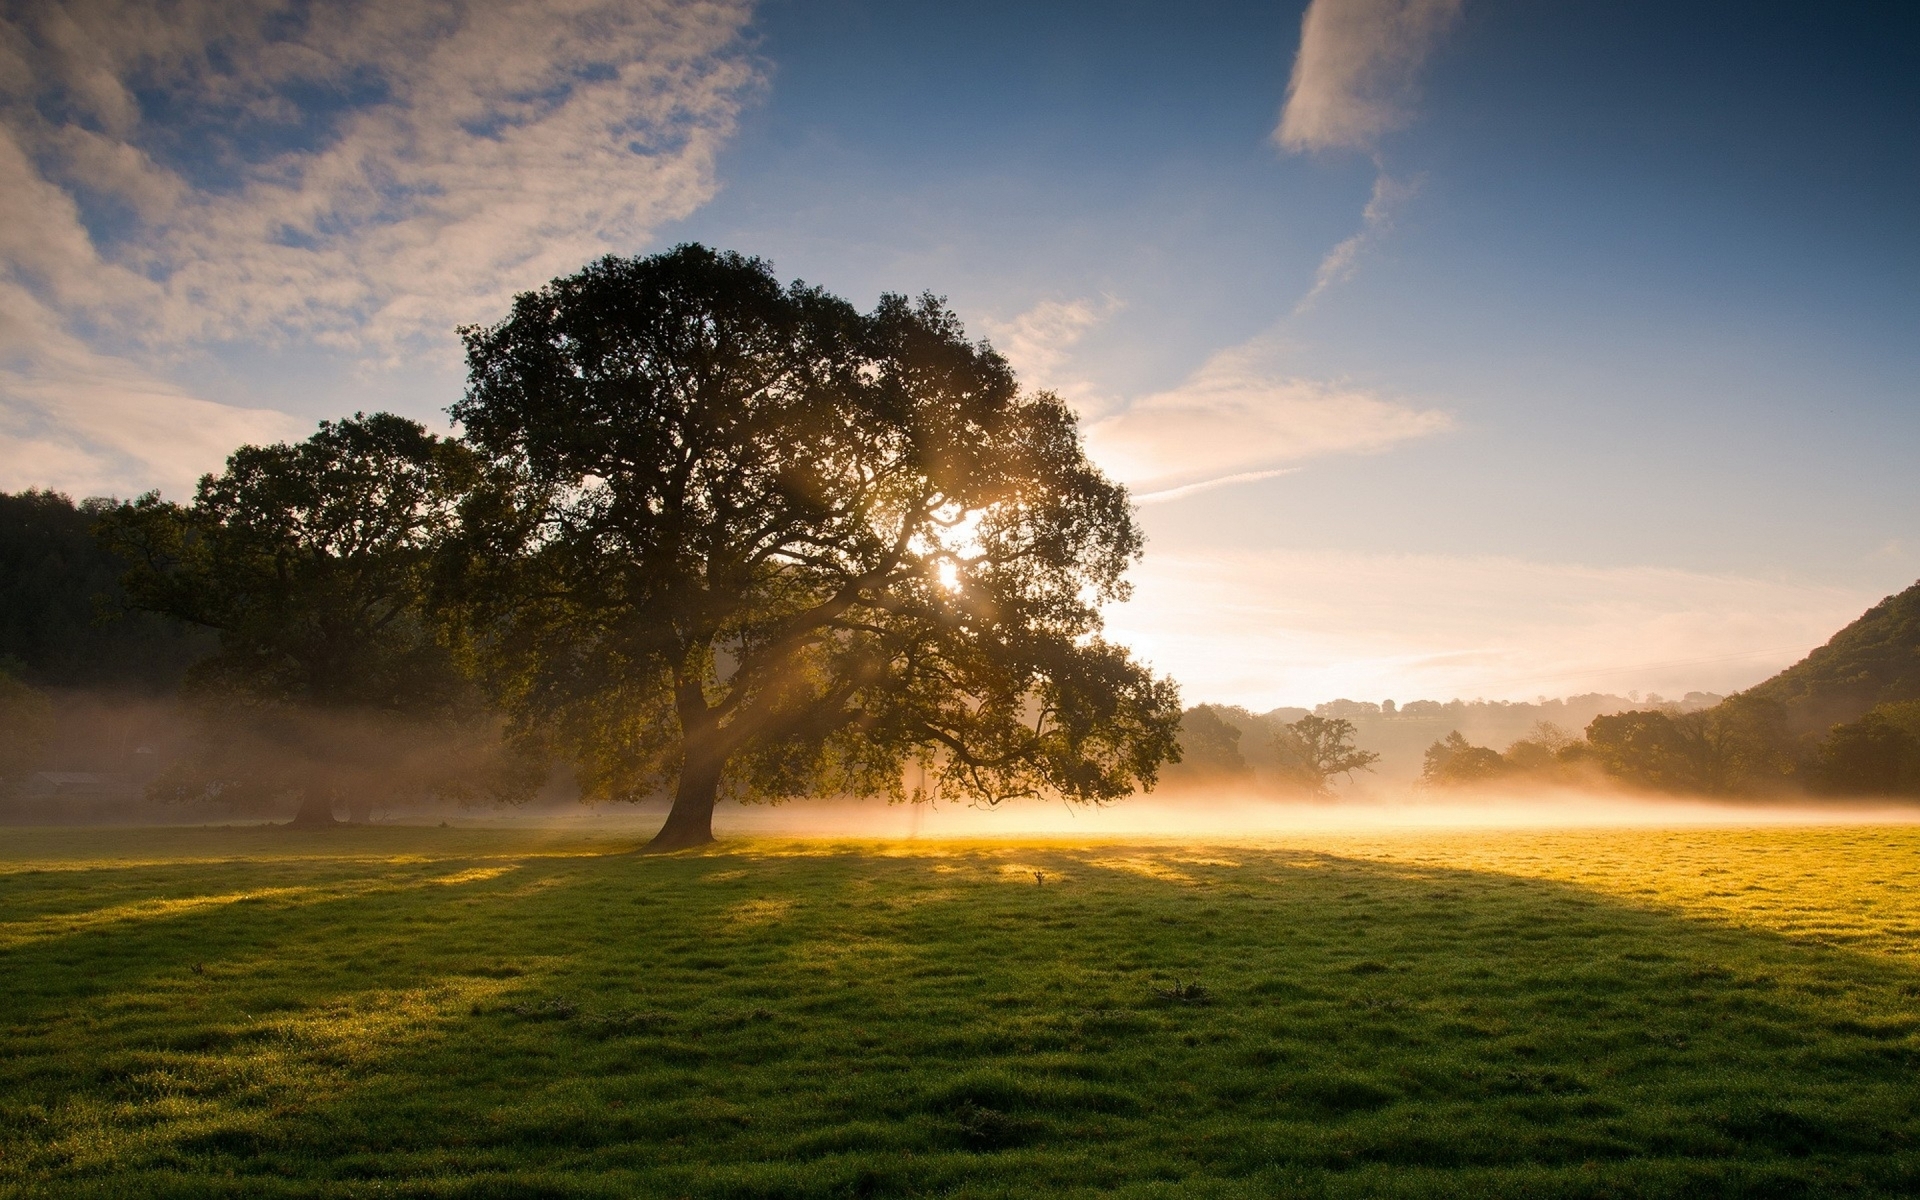 Картинка: Поле, трава, деревья, туман, свет, солнце, небо, облака